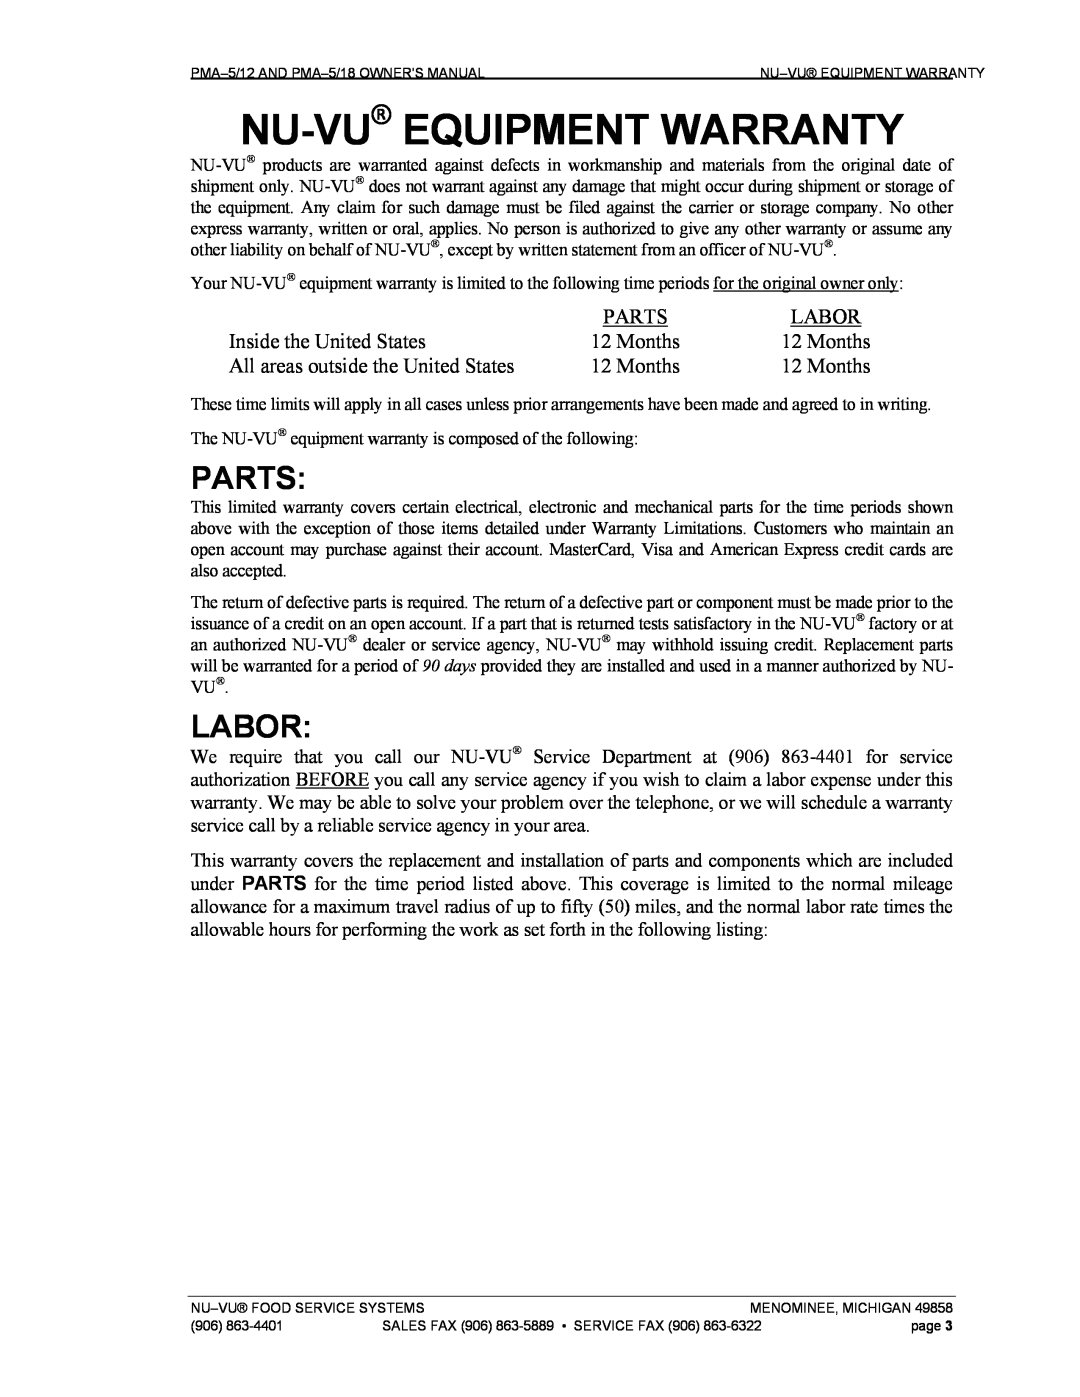 Nu-Vu PMA -5/12, PMA 5/18 owner manual Nu-Vu Equipment Warranty, Parts, Labor 